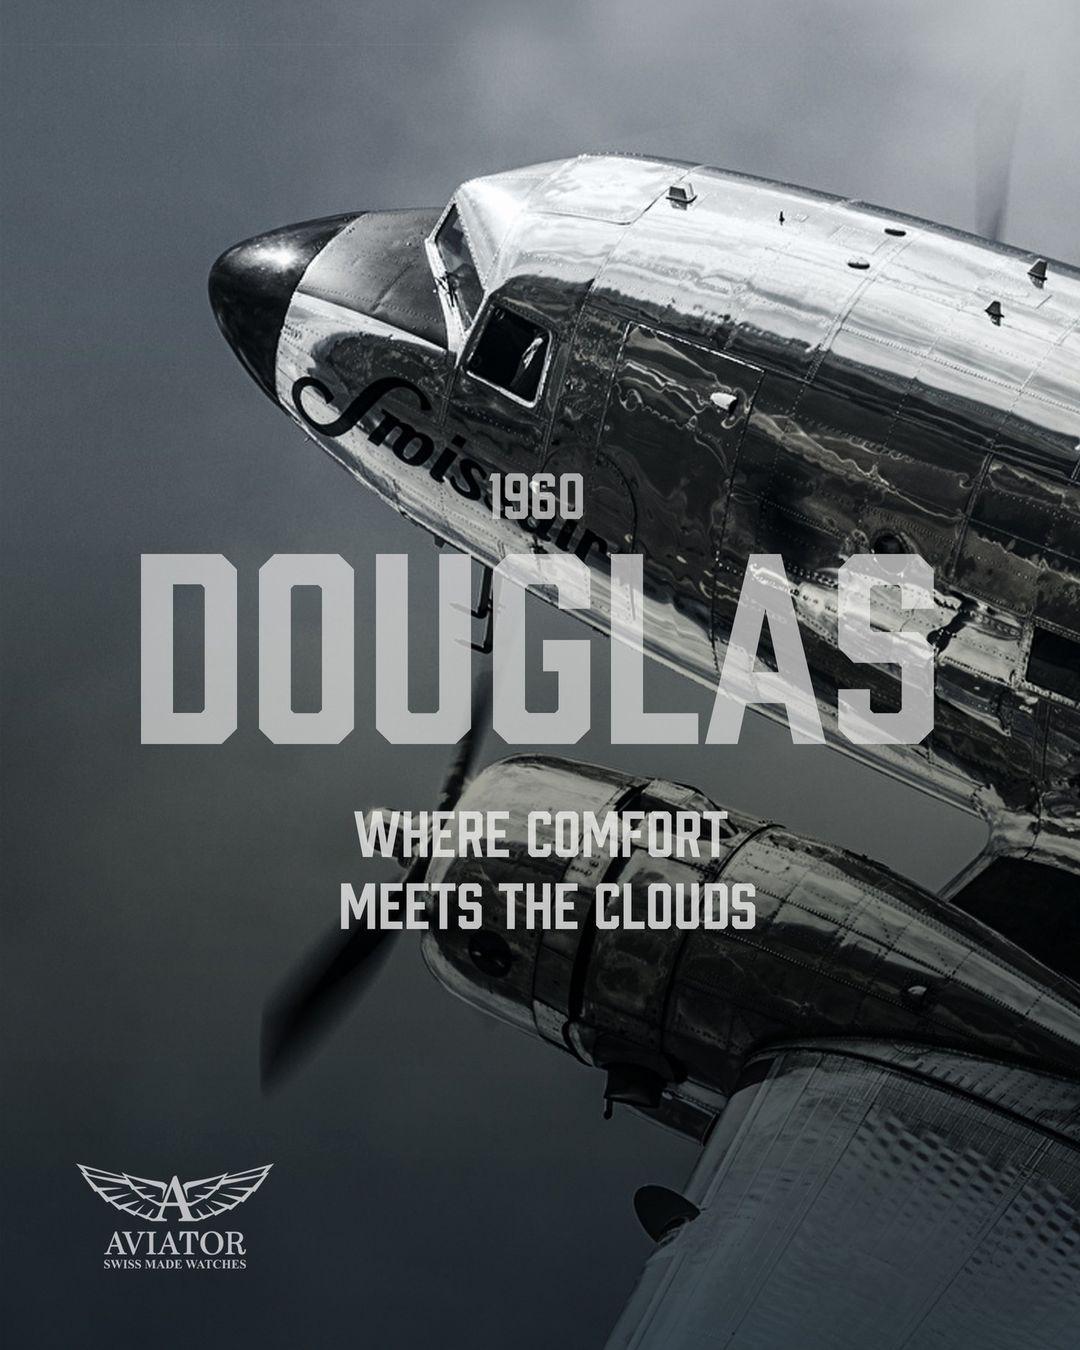 DOUGLAS DC-3